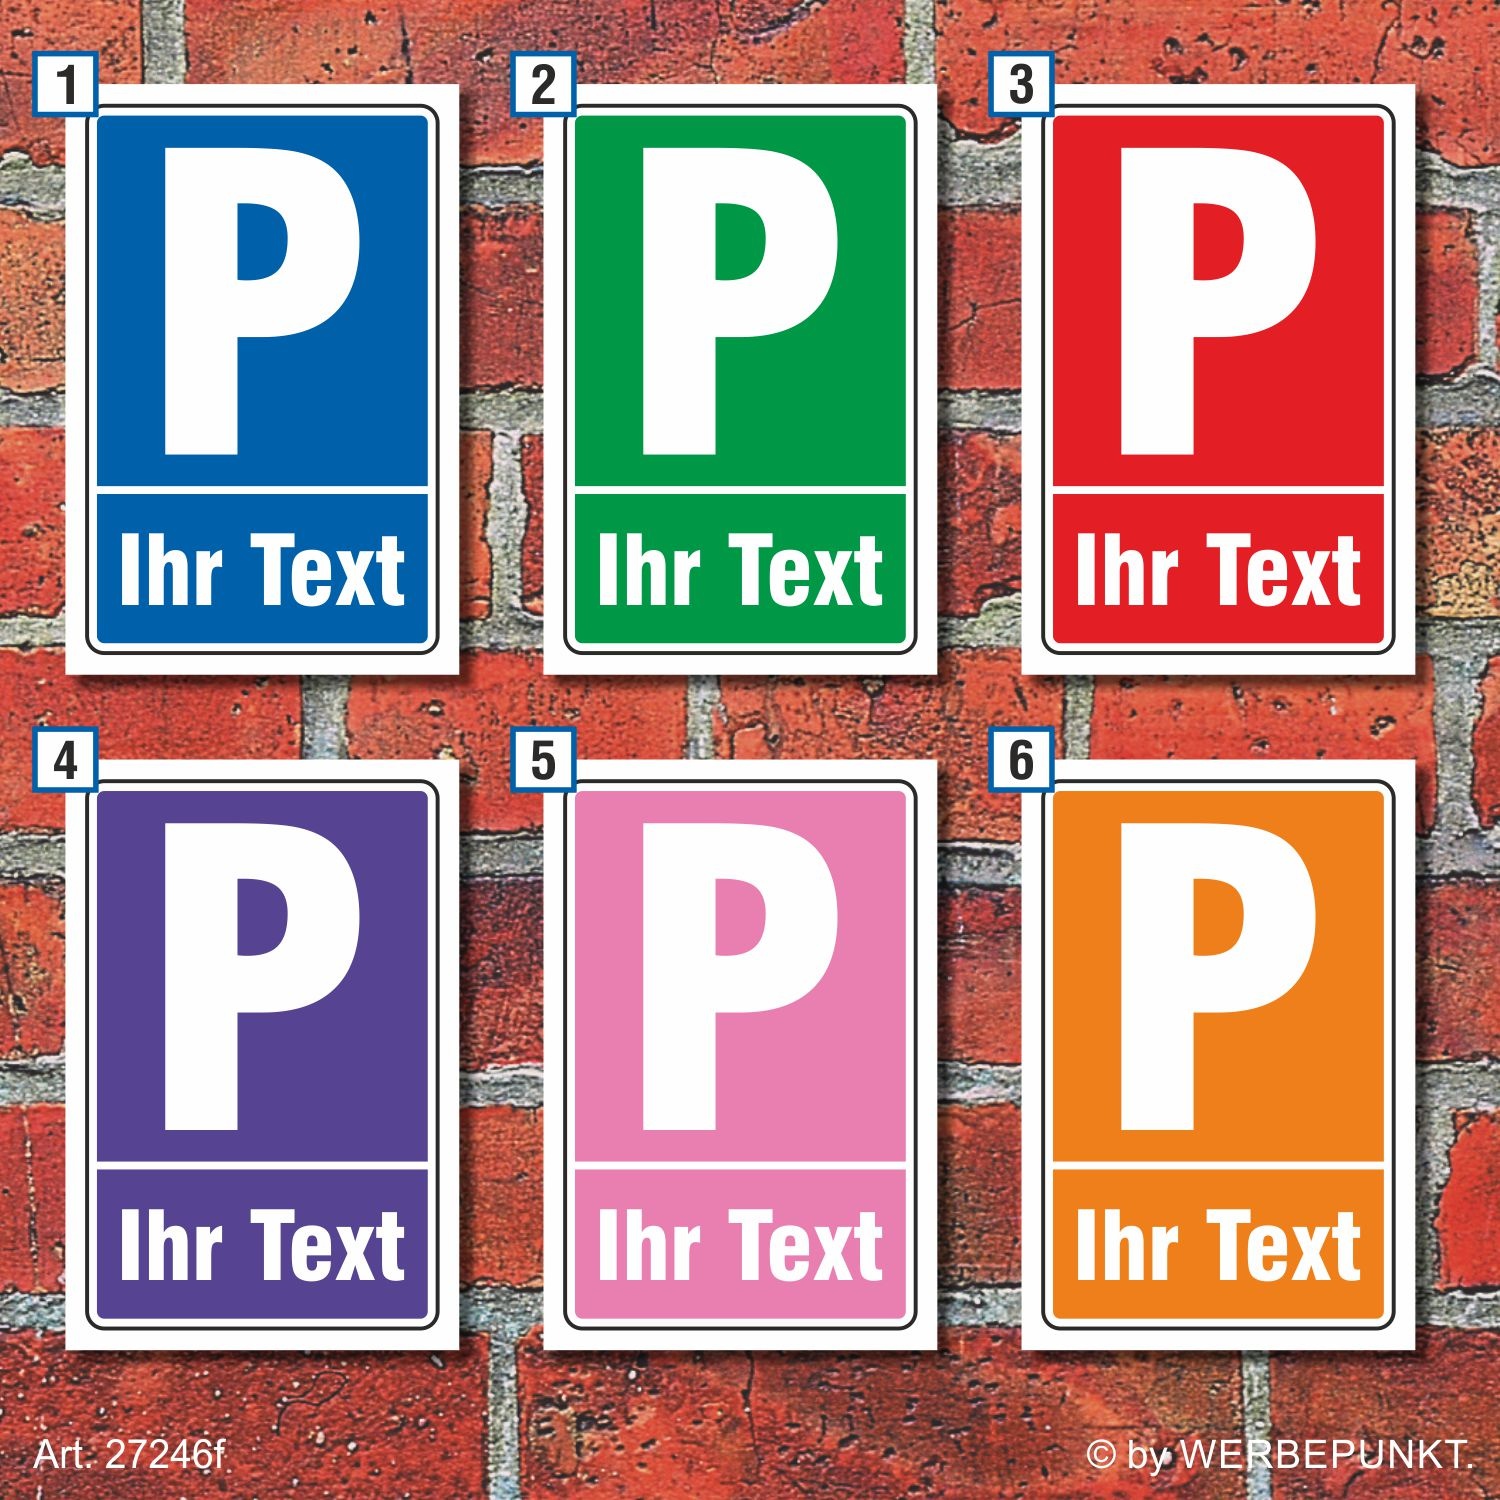 https://schildereinkauf.de/media/image/product/43817/lg/schild-parkplatzschild-parkverbot-wunschtext-ihr-text-halteverbot-farbauswahl_18.jpg